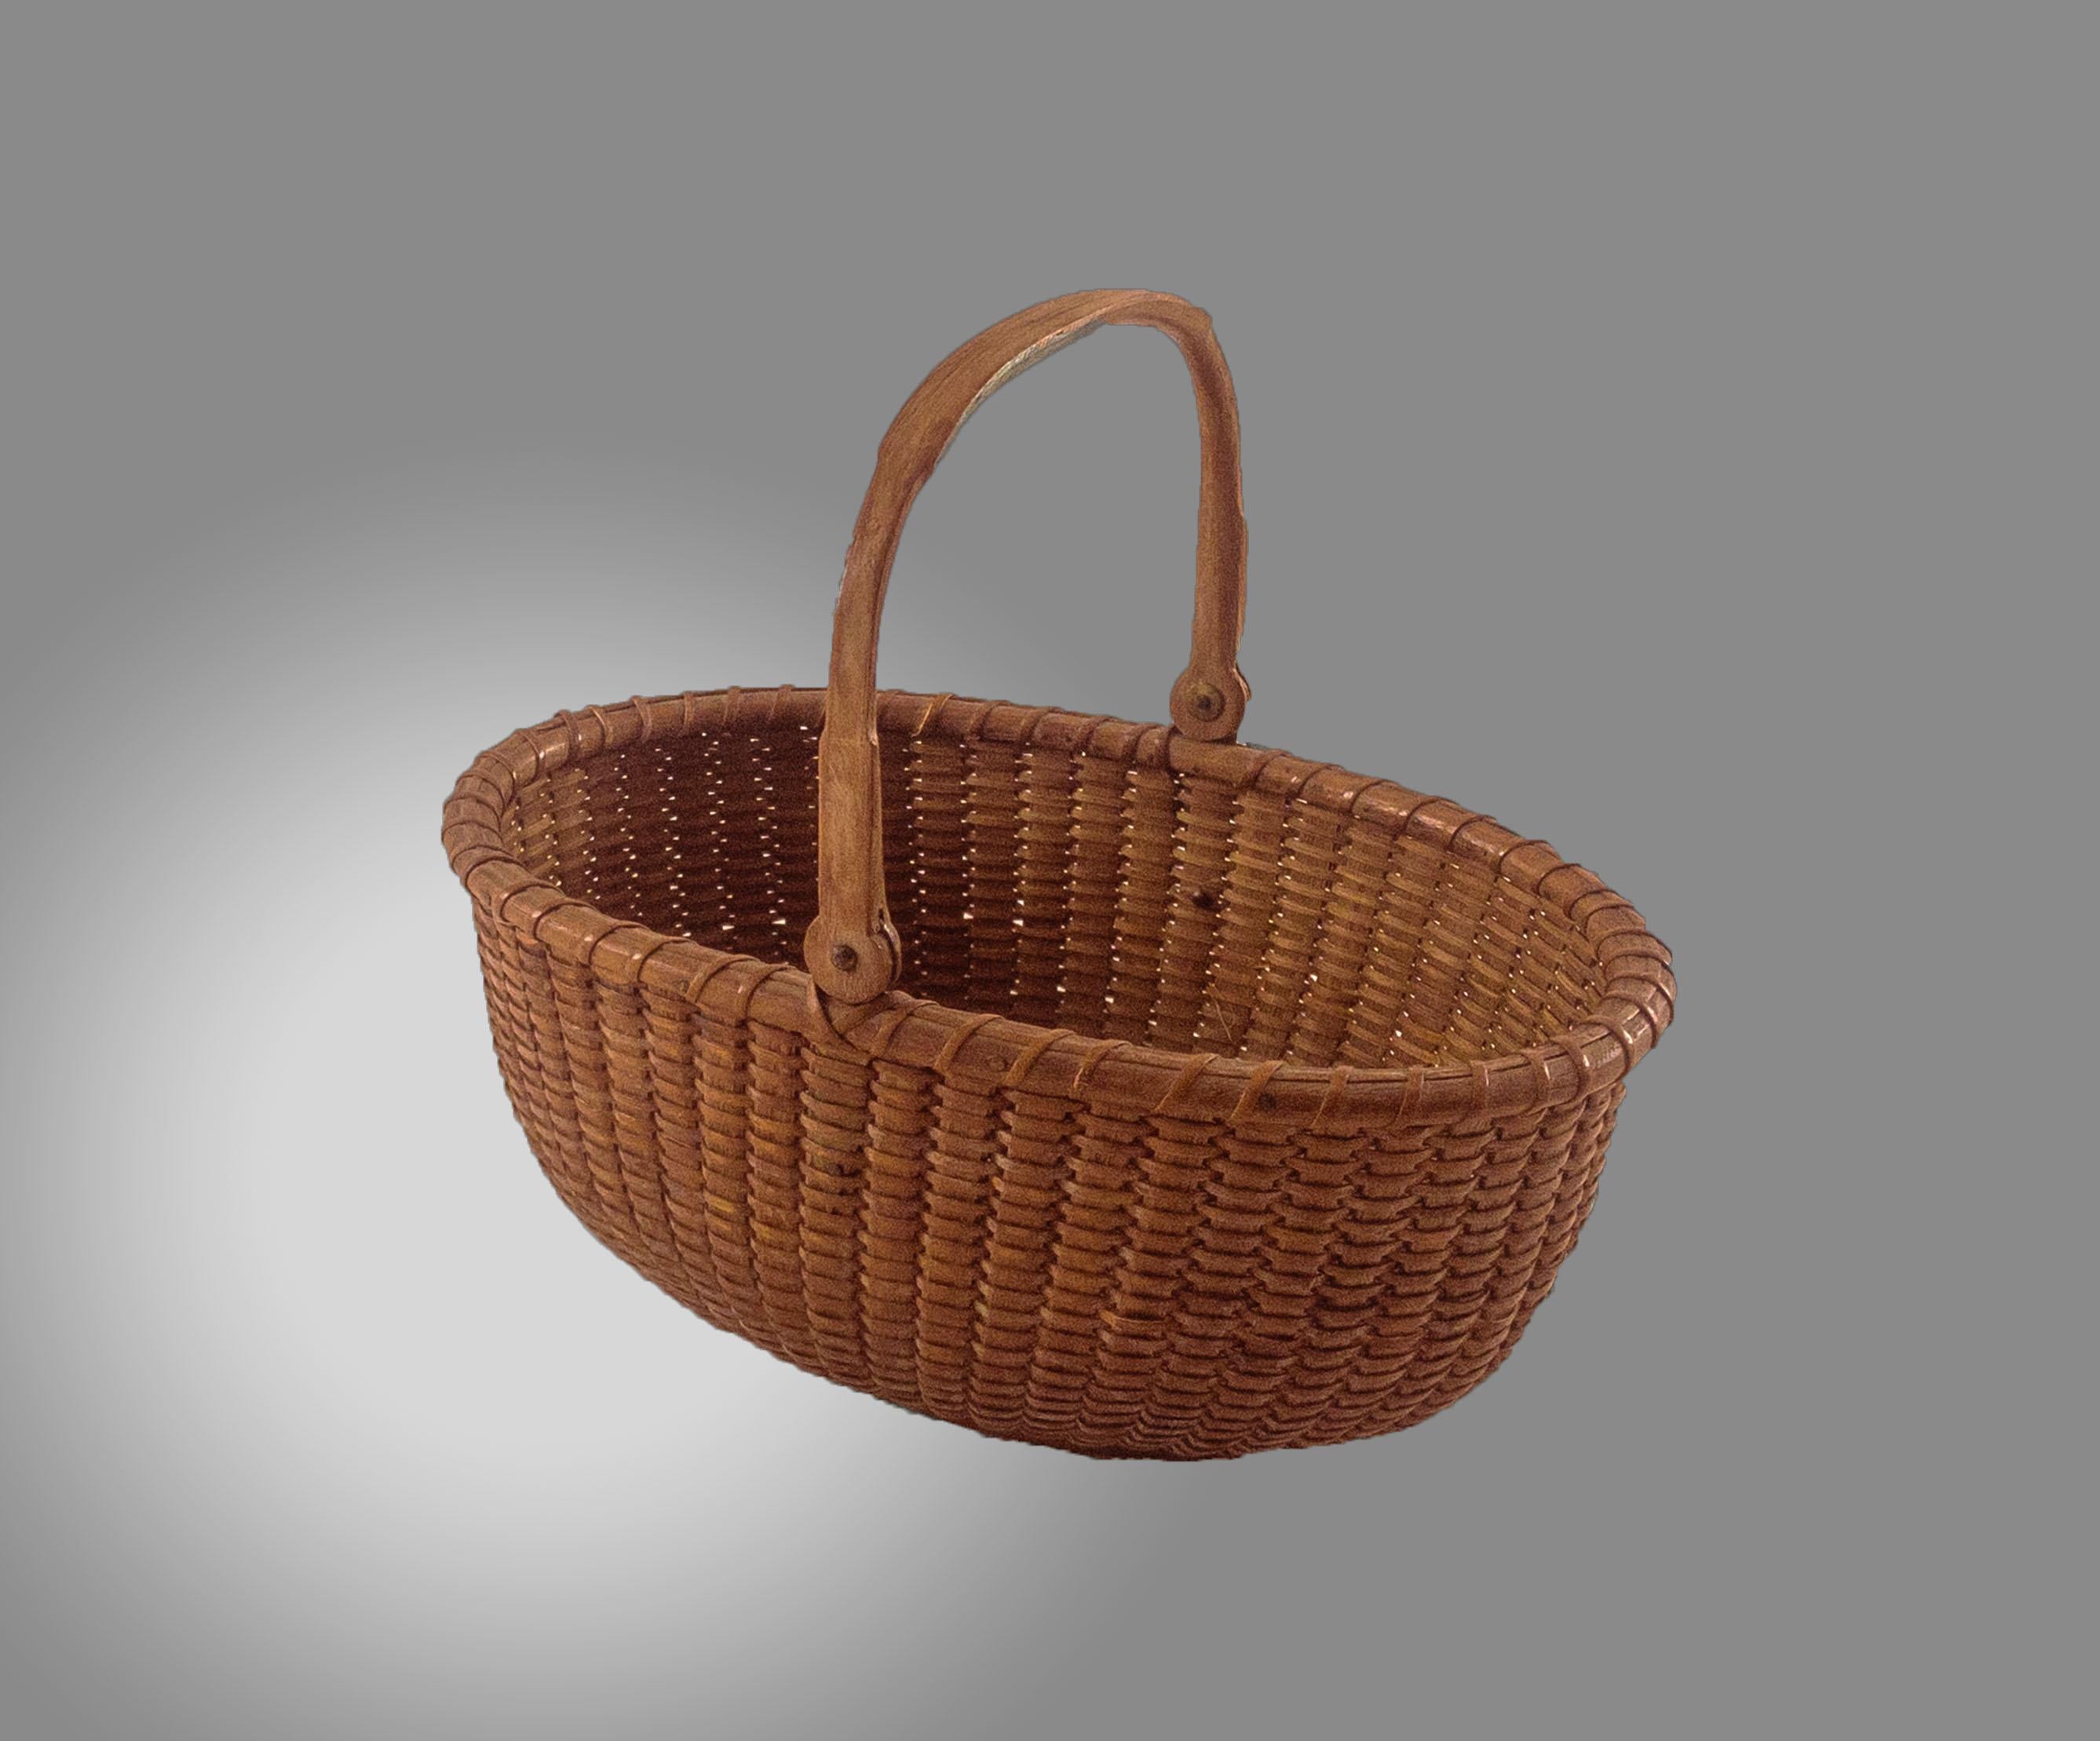 nantucket lightship baskets for sale